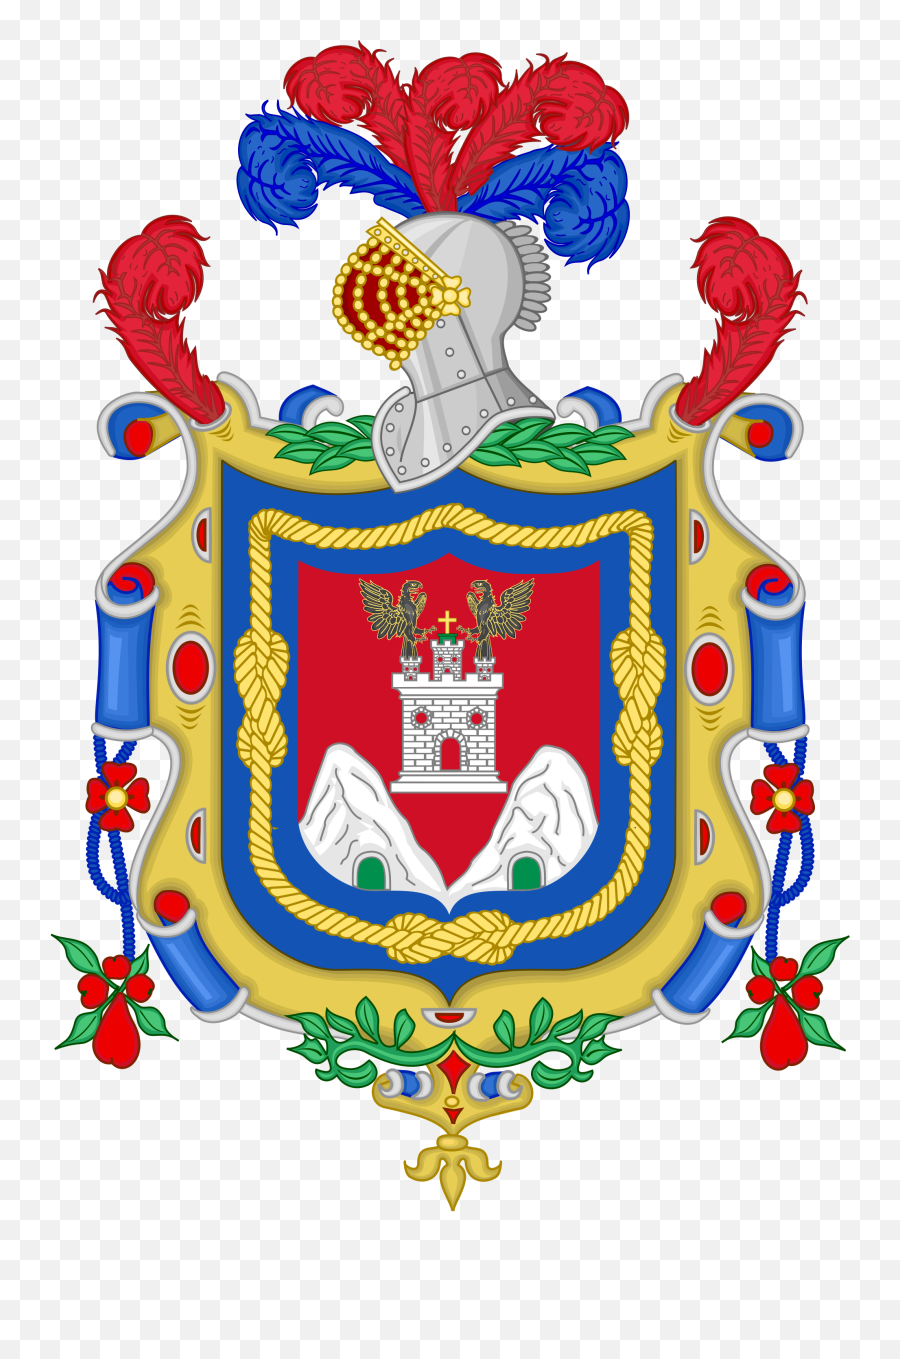 100 Ideas De Escudos Reales Escudo Escudo De Armas Emoji,Bandera De Panama Emoticon